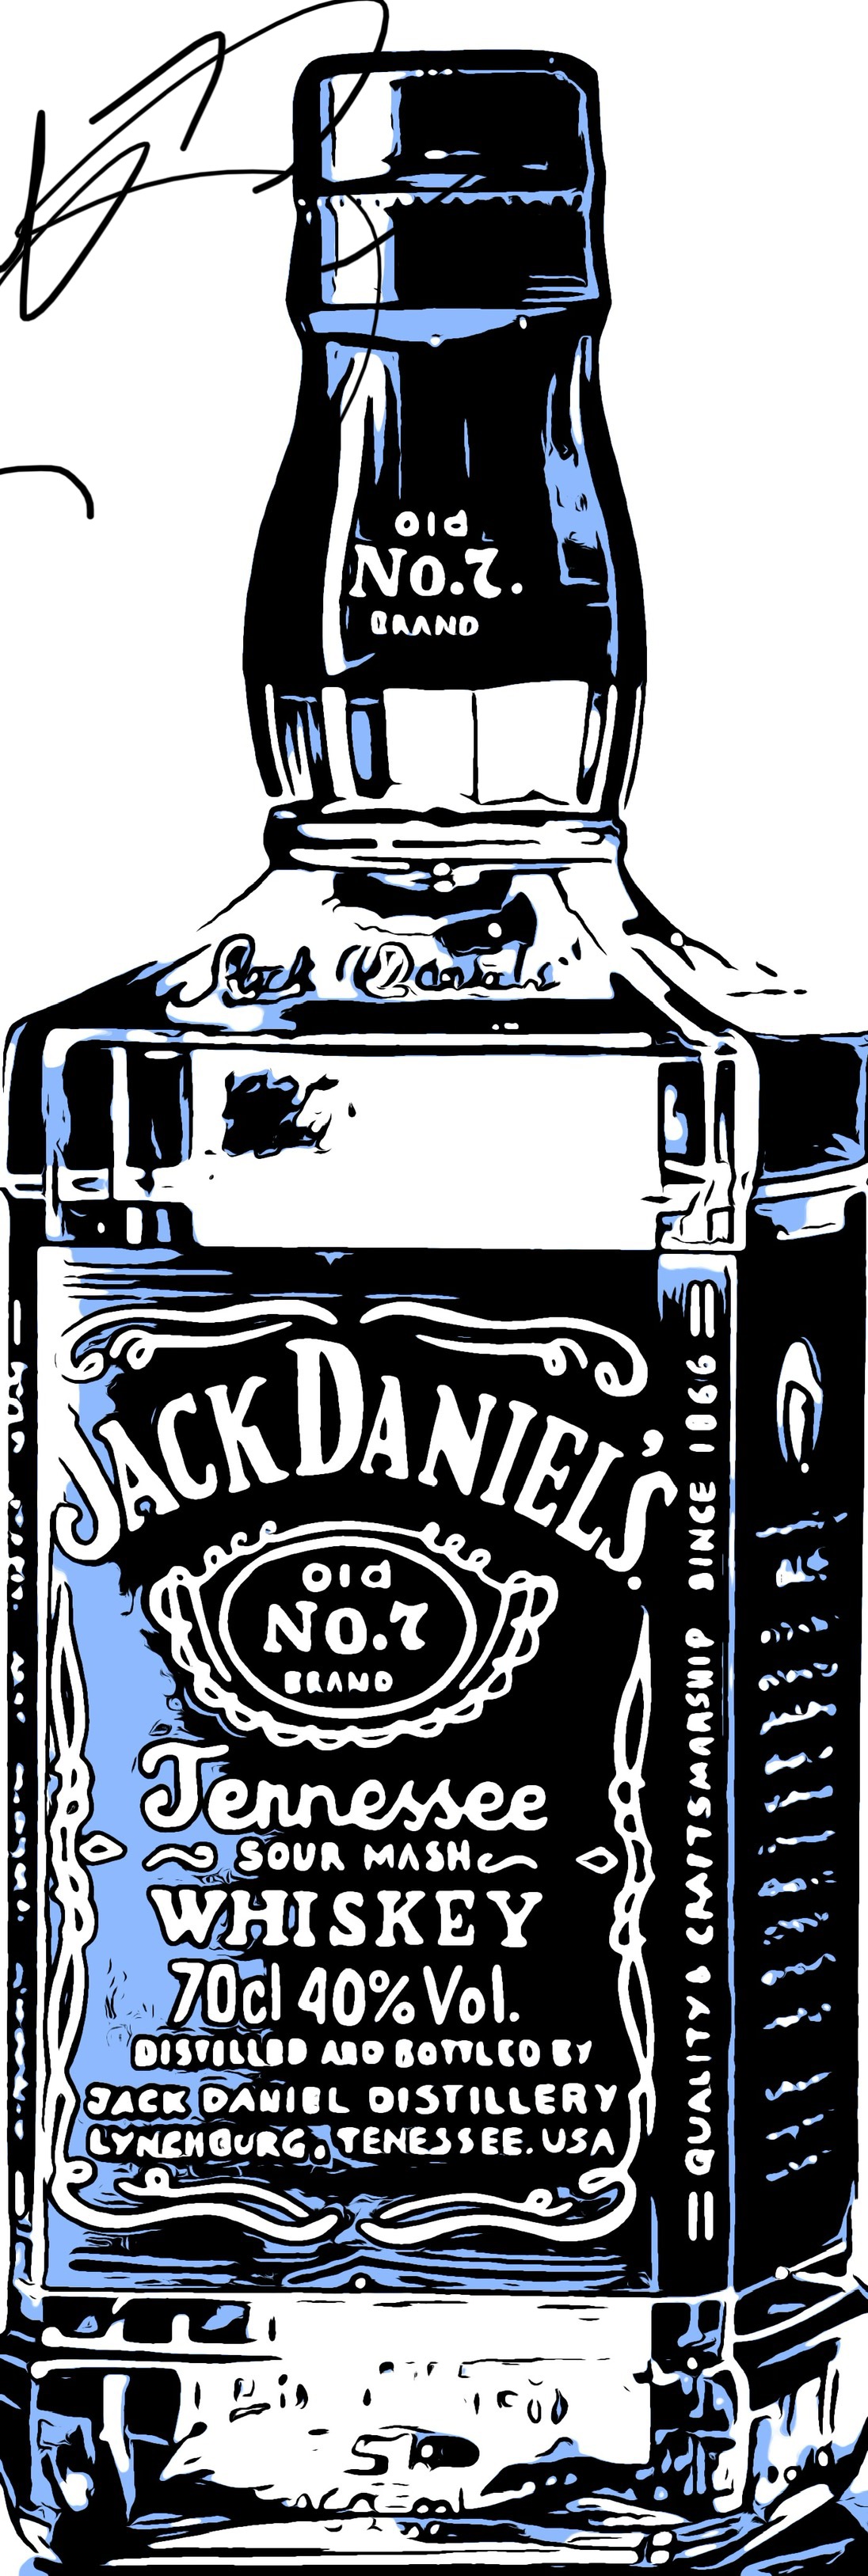 FileJack Daniels bottlejpg  Wikimedia Commons